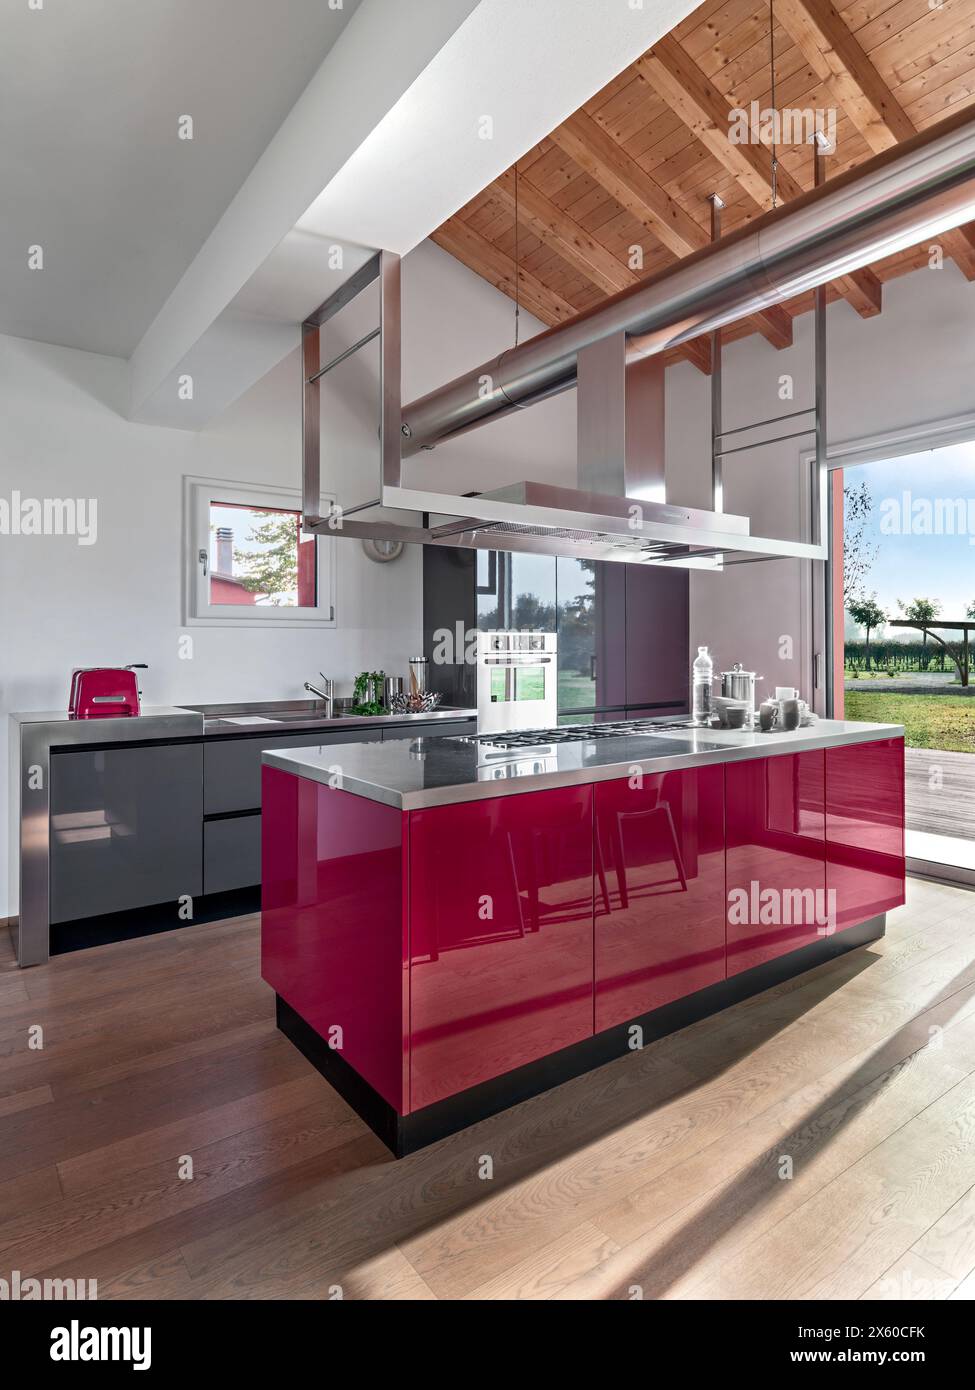 Innenausstattung einer modernen rot lackierten Küche im Vordergrund die Inselküche, der Boden ist aus Holz und die Decke ist aus freiliegenden Holzbalken Stockfoto